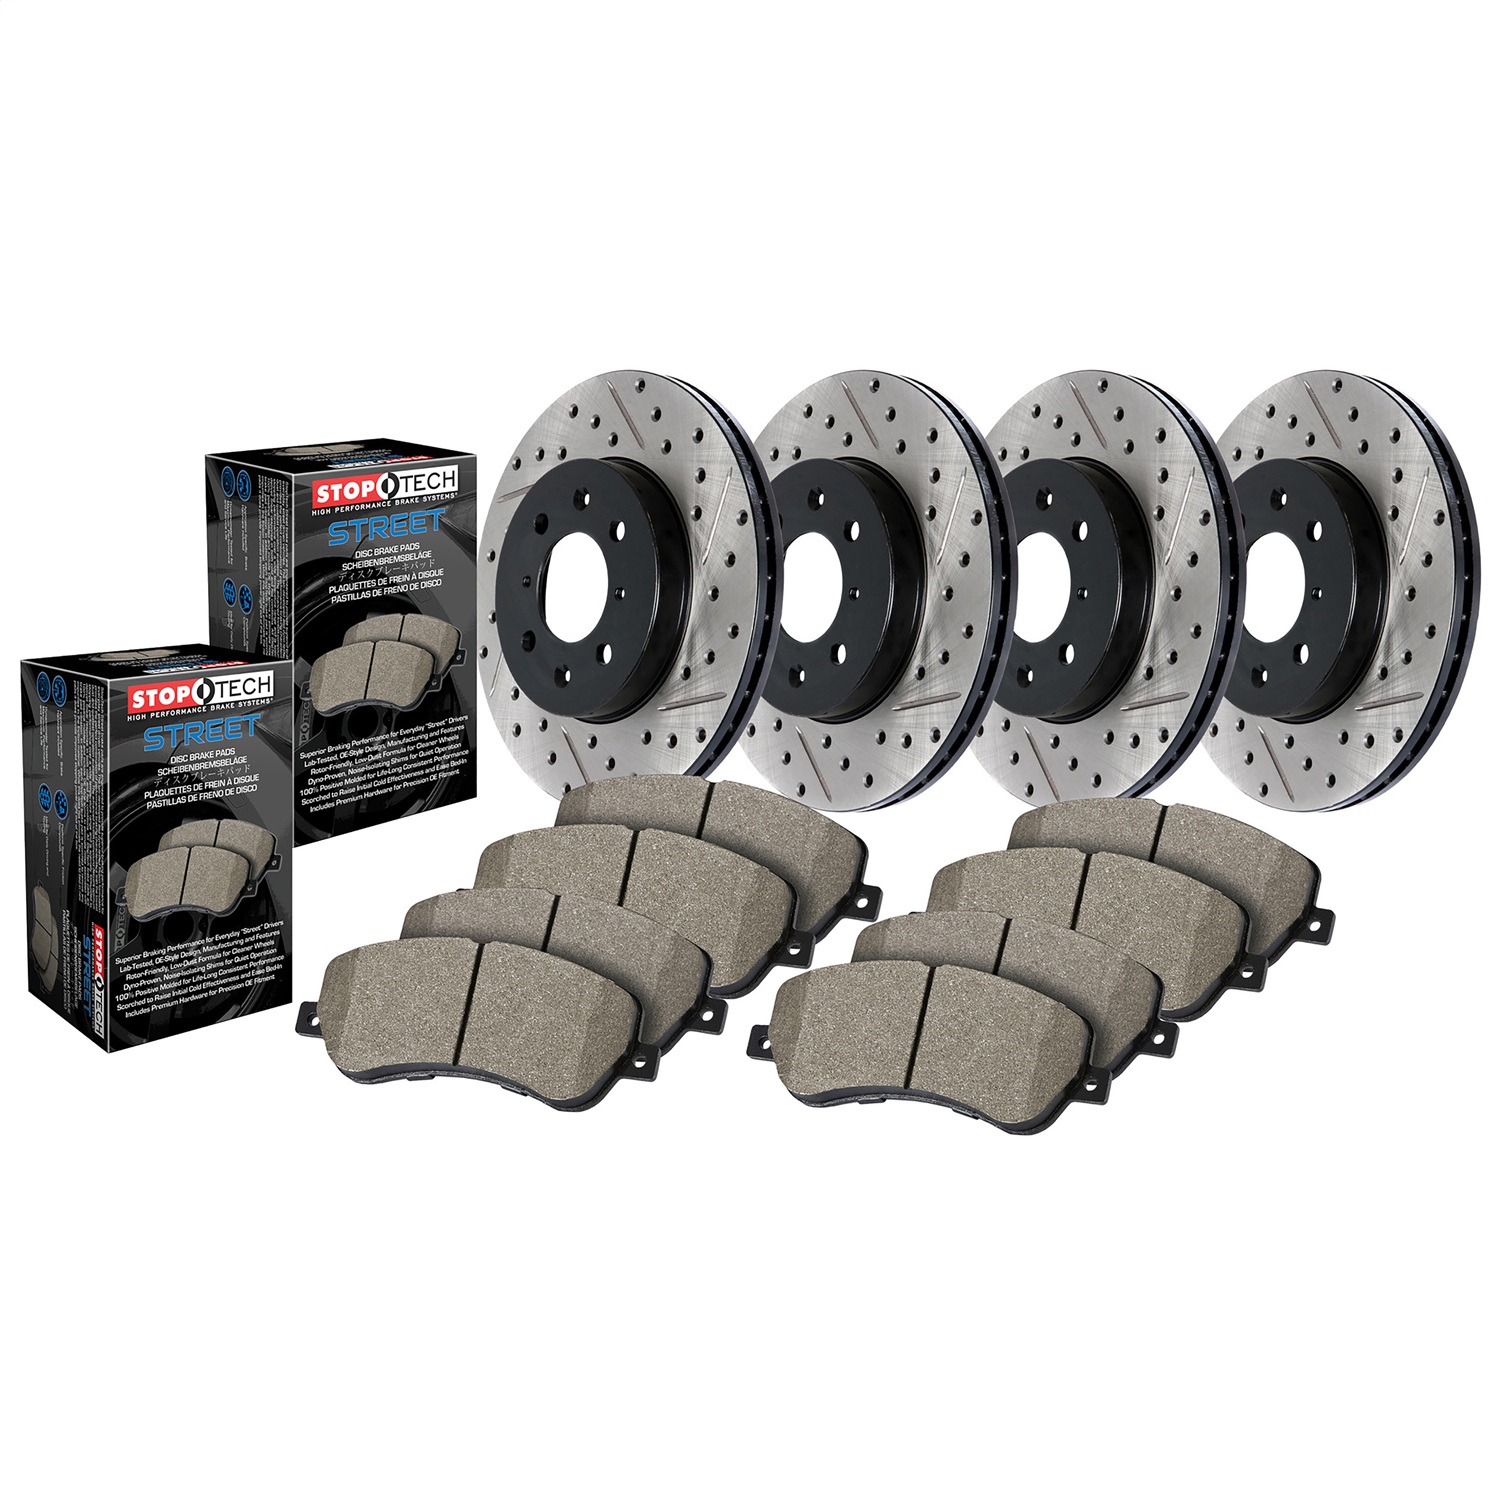 StopTech 935.40035 Disc Brake Upgrade Kit